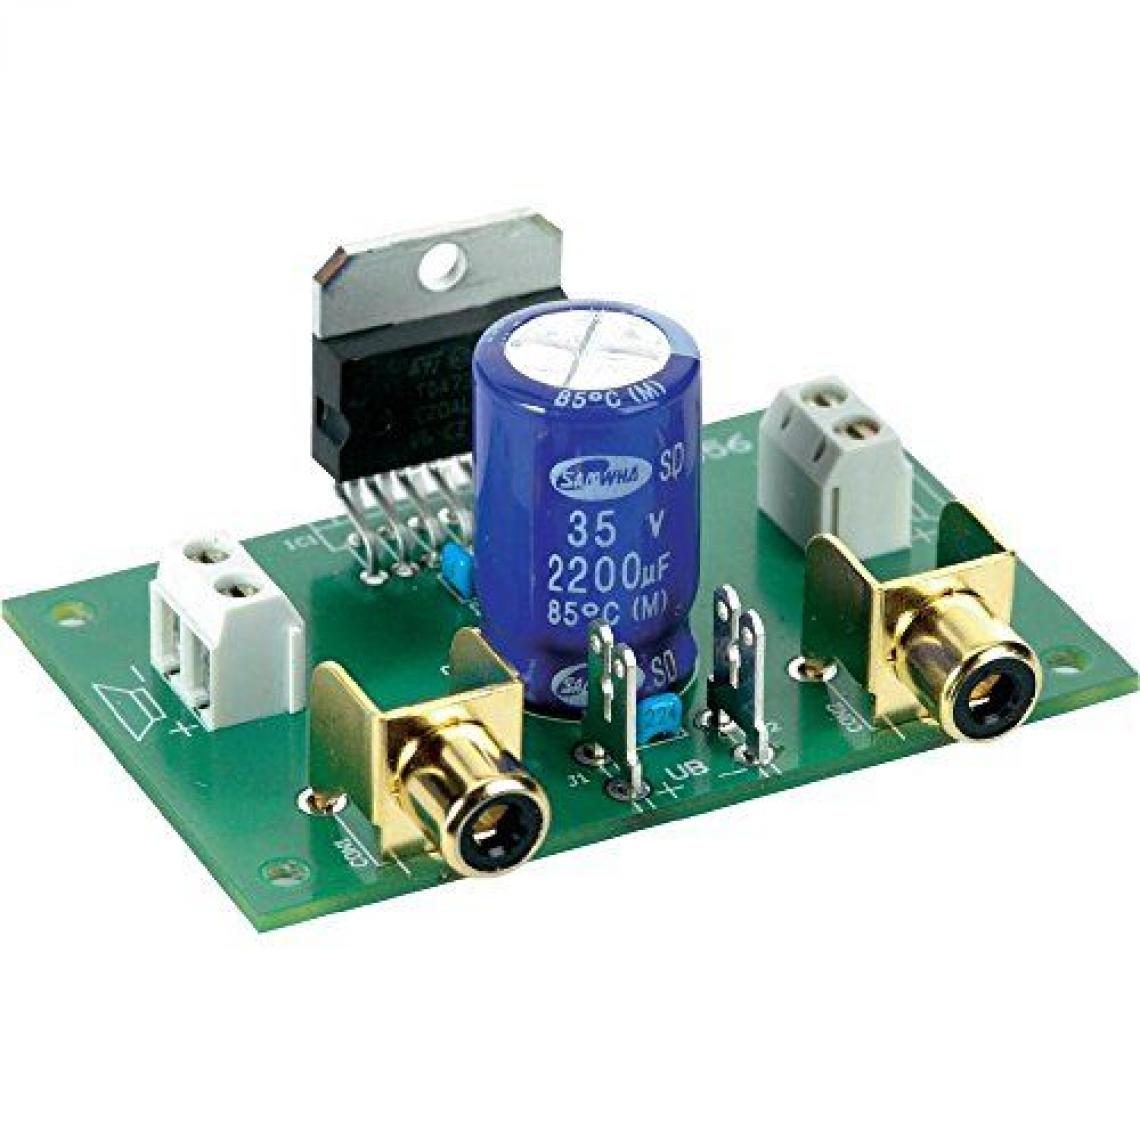 marque generique - Amplificateur stéréo (kit à monter) Components 1216582 9 V/DC, 12 V/DC, 18 V/DC 80 W 2 â„¦ 1 pc(s) - Ampli